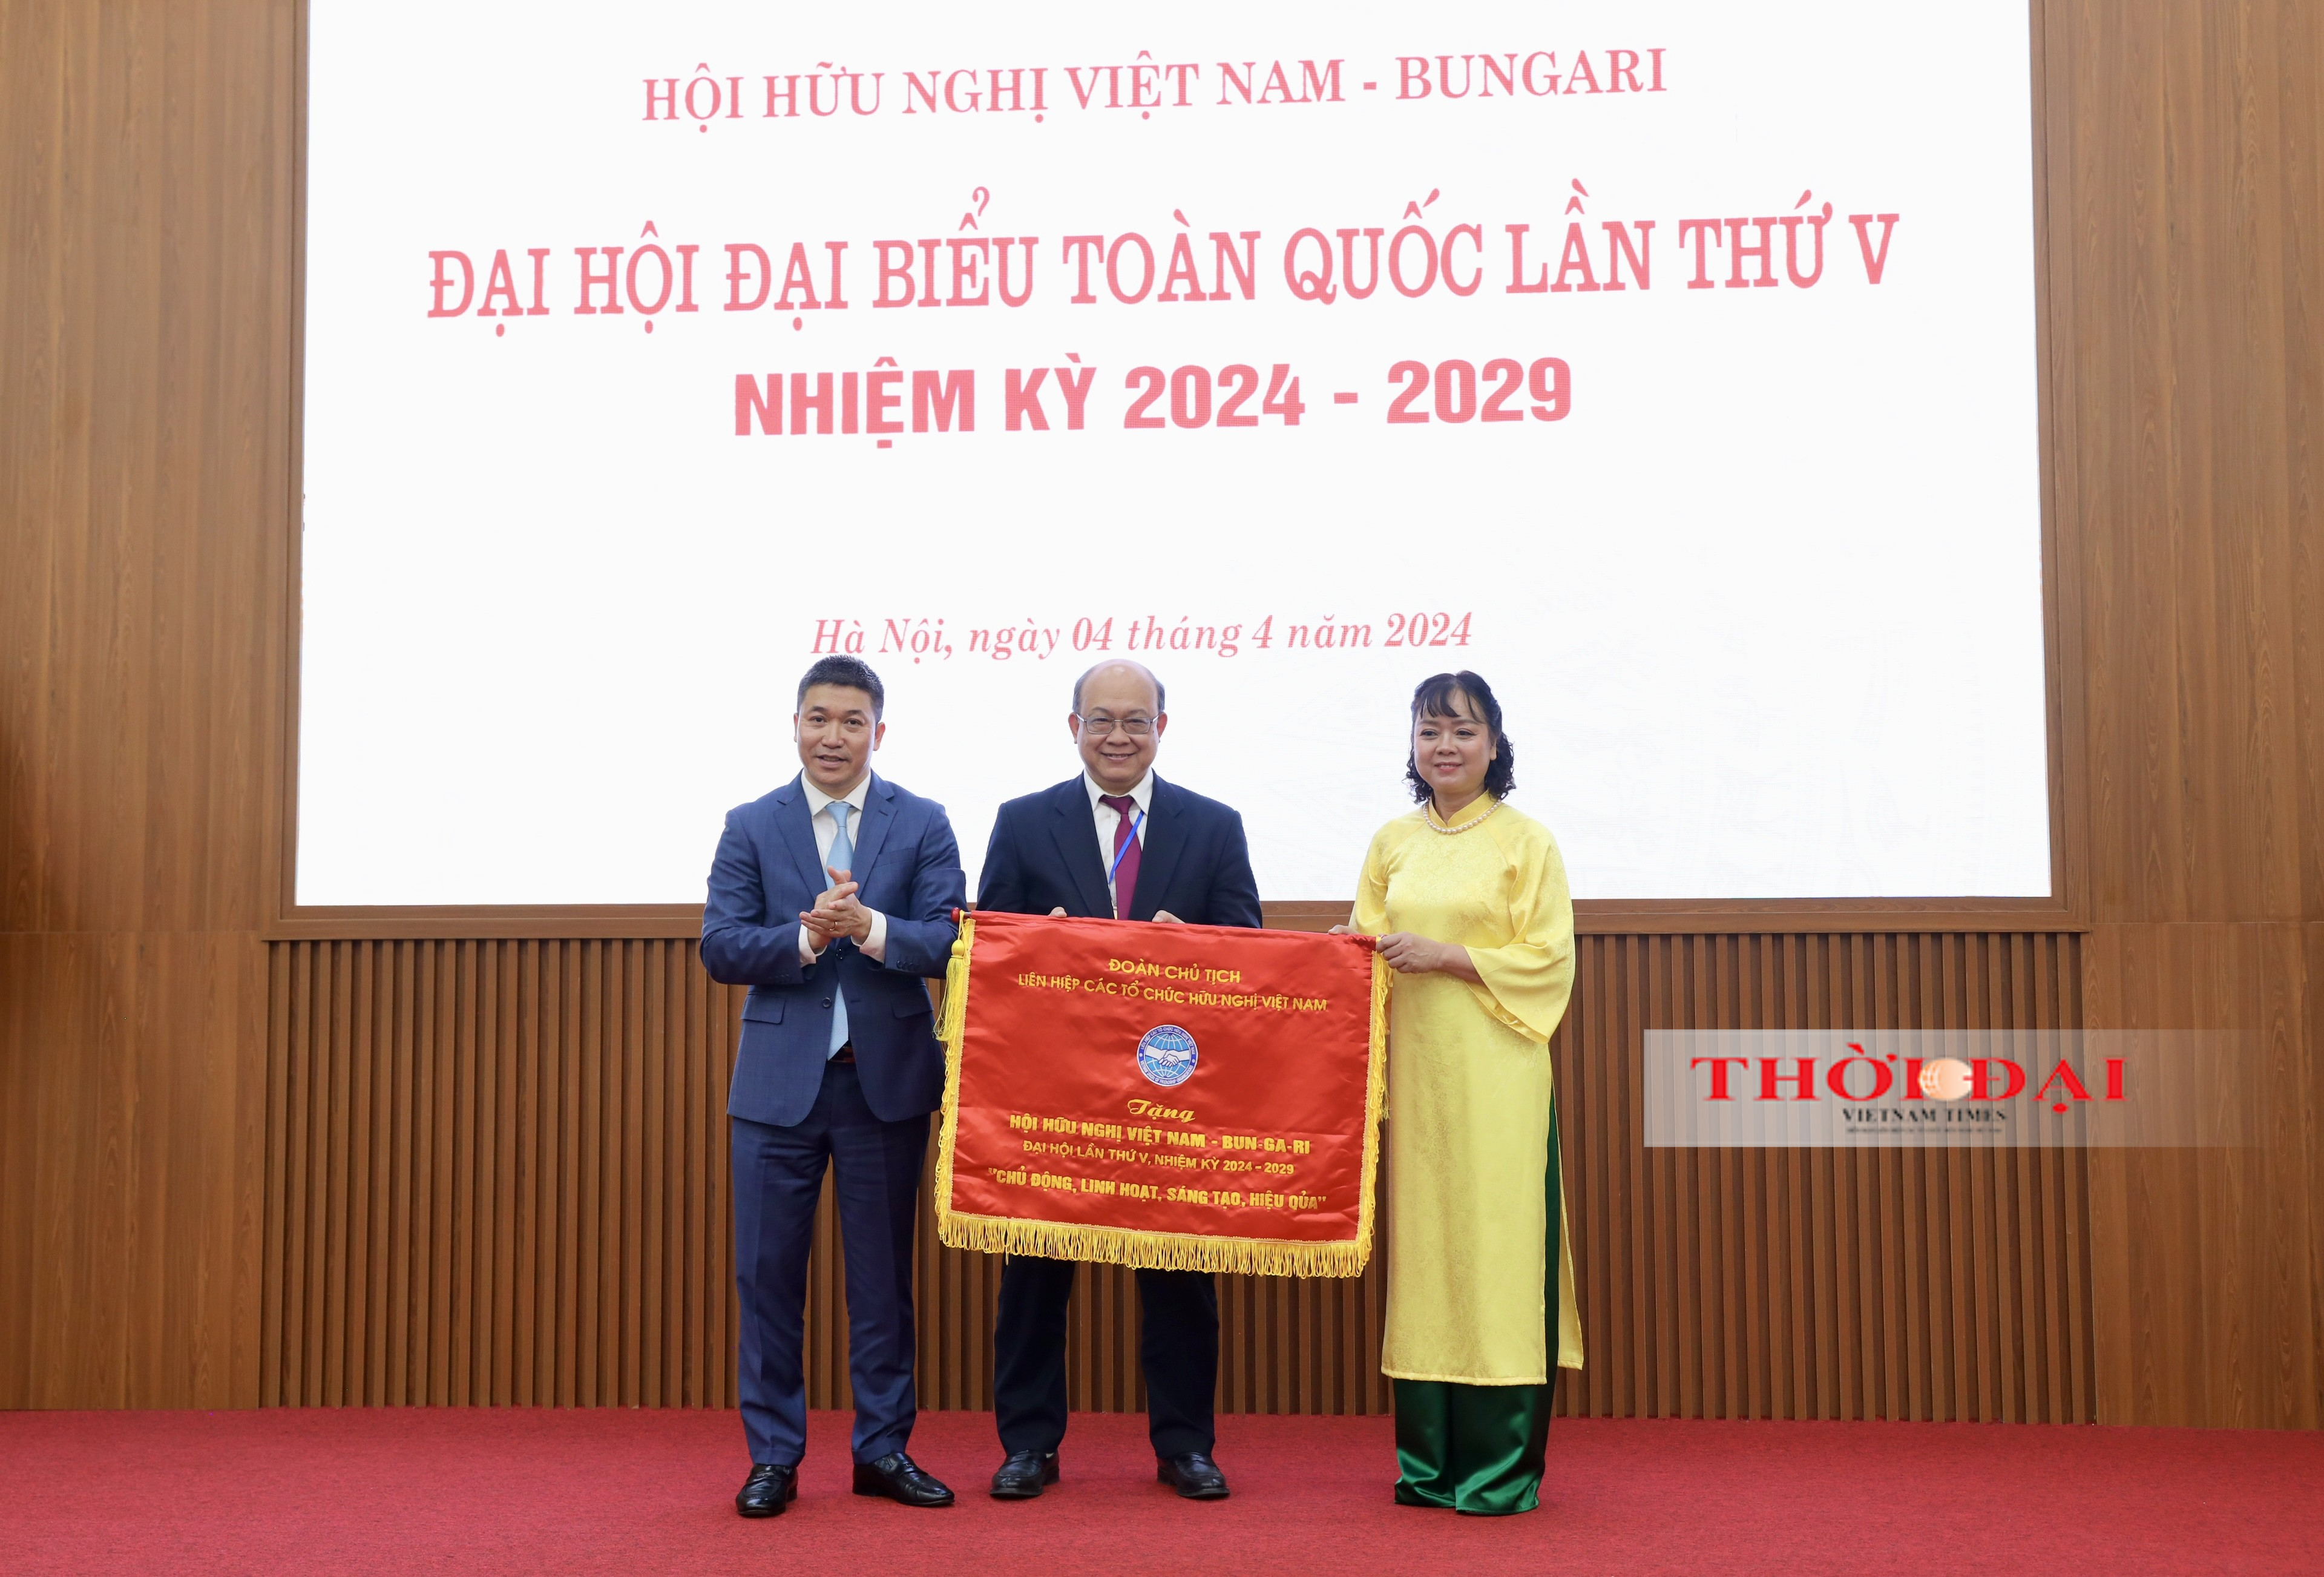 Ông Huỳnh Quyết Thắng được bầu làm Chủ tịch Hội hữu nghị Việt Nam - Bungari nhiệm kỳ 2024 - 2029